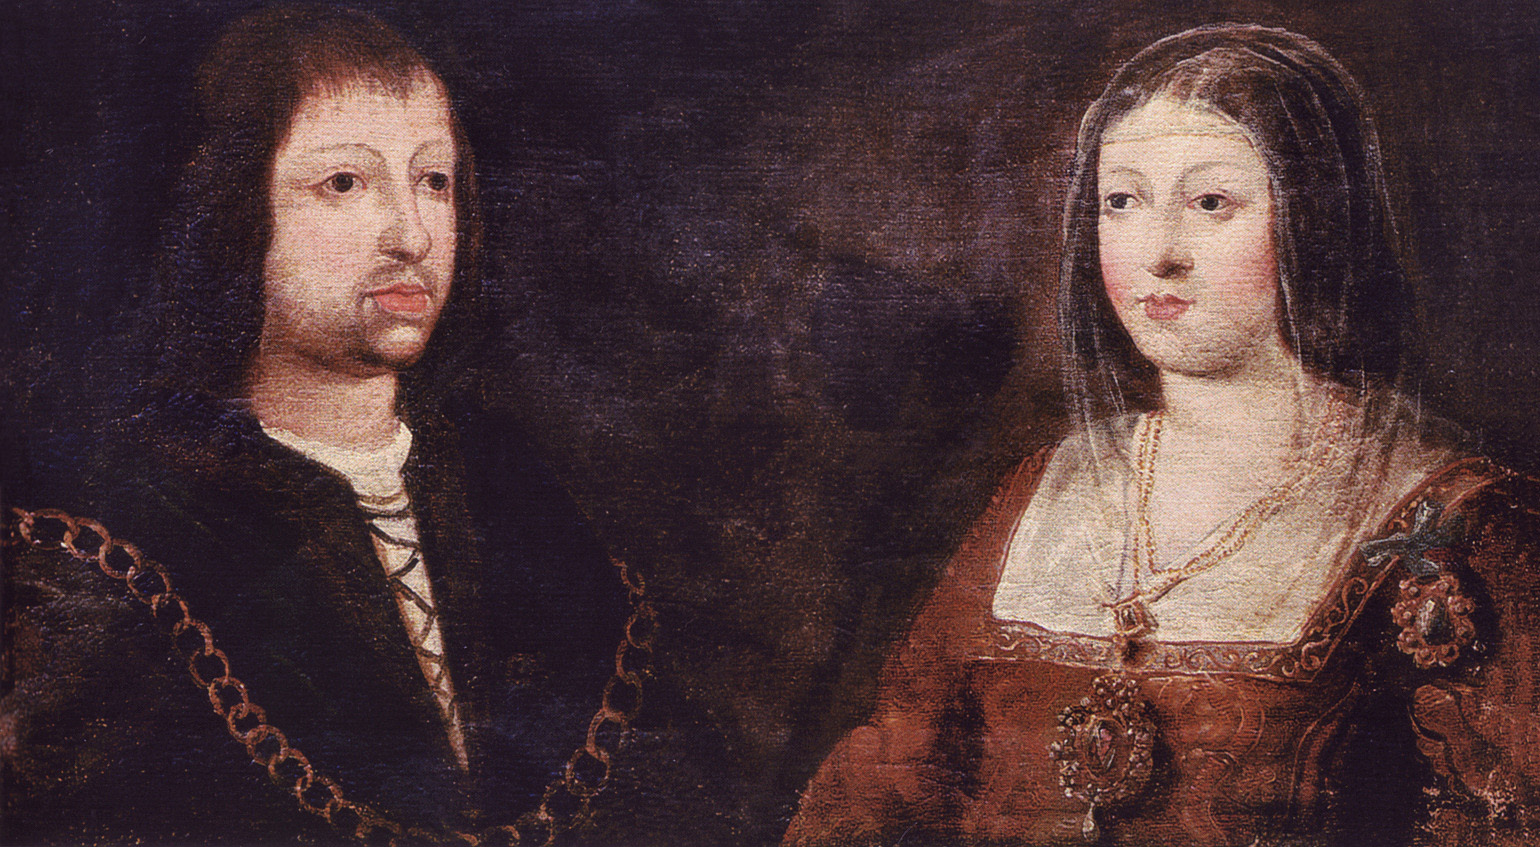 Фердинанд II Арагонский и Изабелла I Кастильская известные как Католические короли. Их свадьба положила основу объединению королевств Арагона и Кастилии и Леона, которое в свою очередь привело к созданию современной Испании